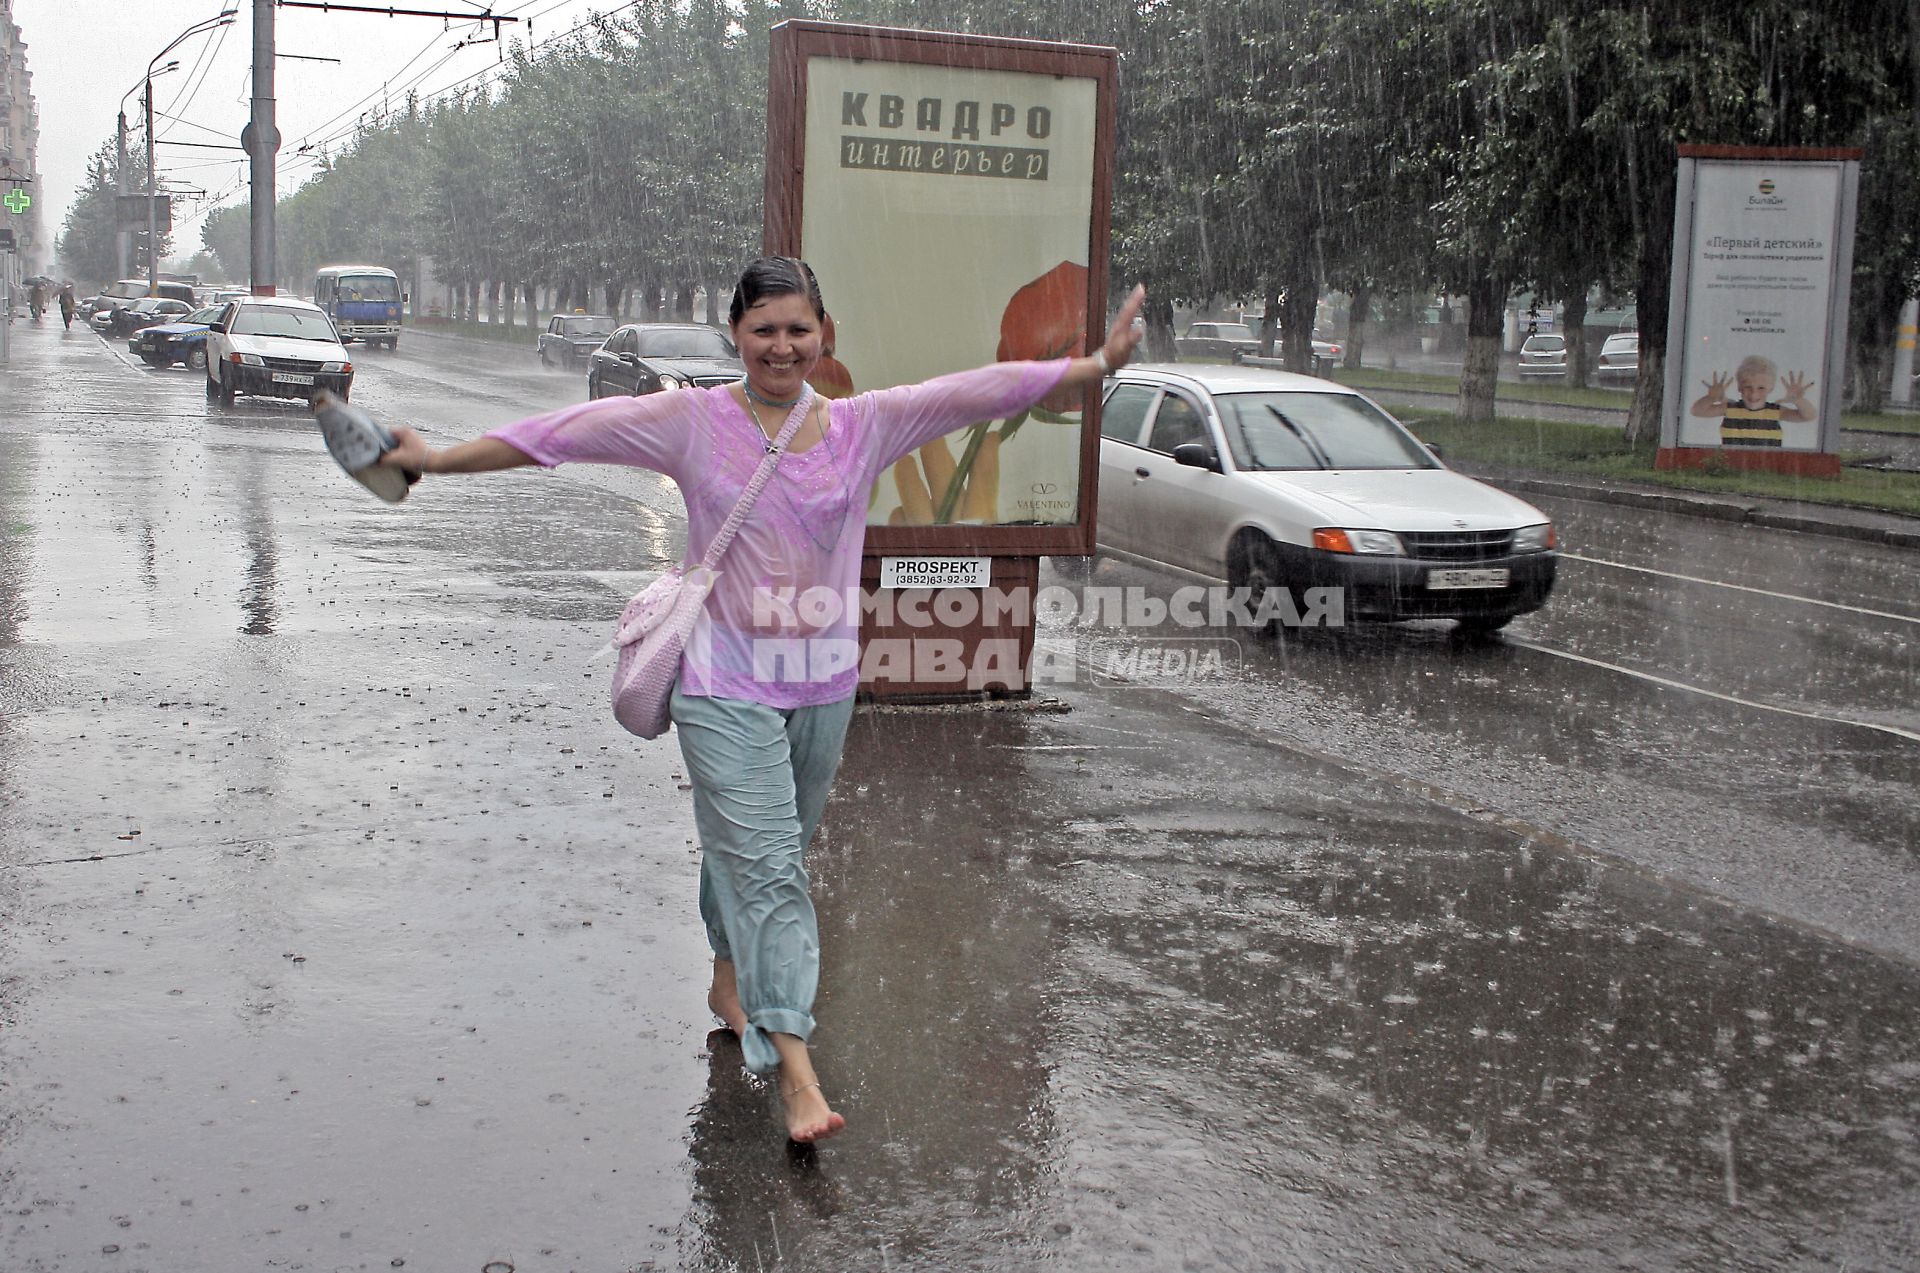 Девушка идет босиком по улице города под проливным дождем без зонта.